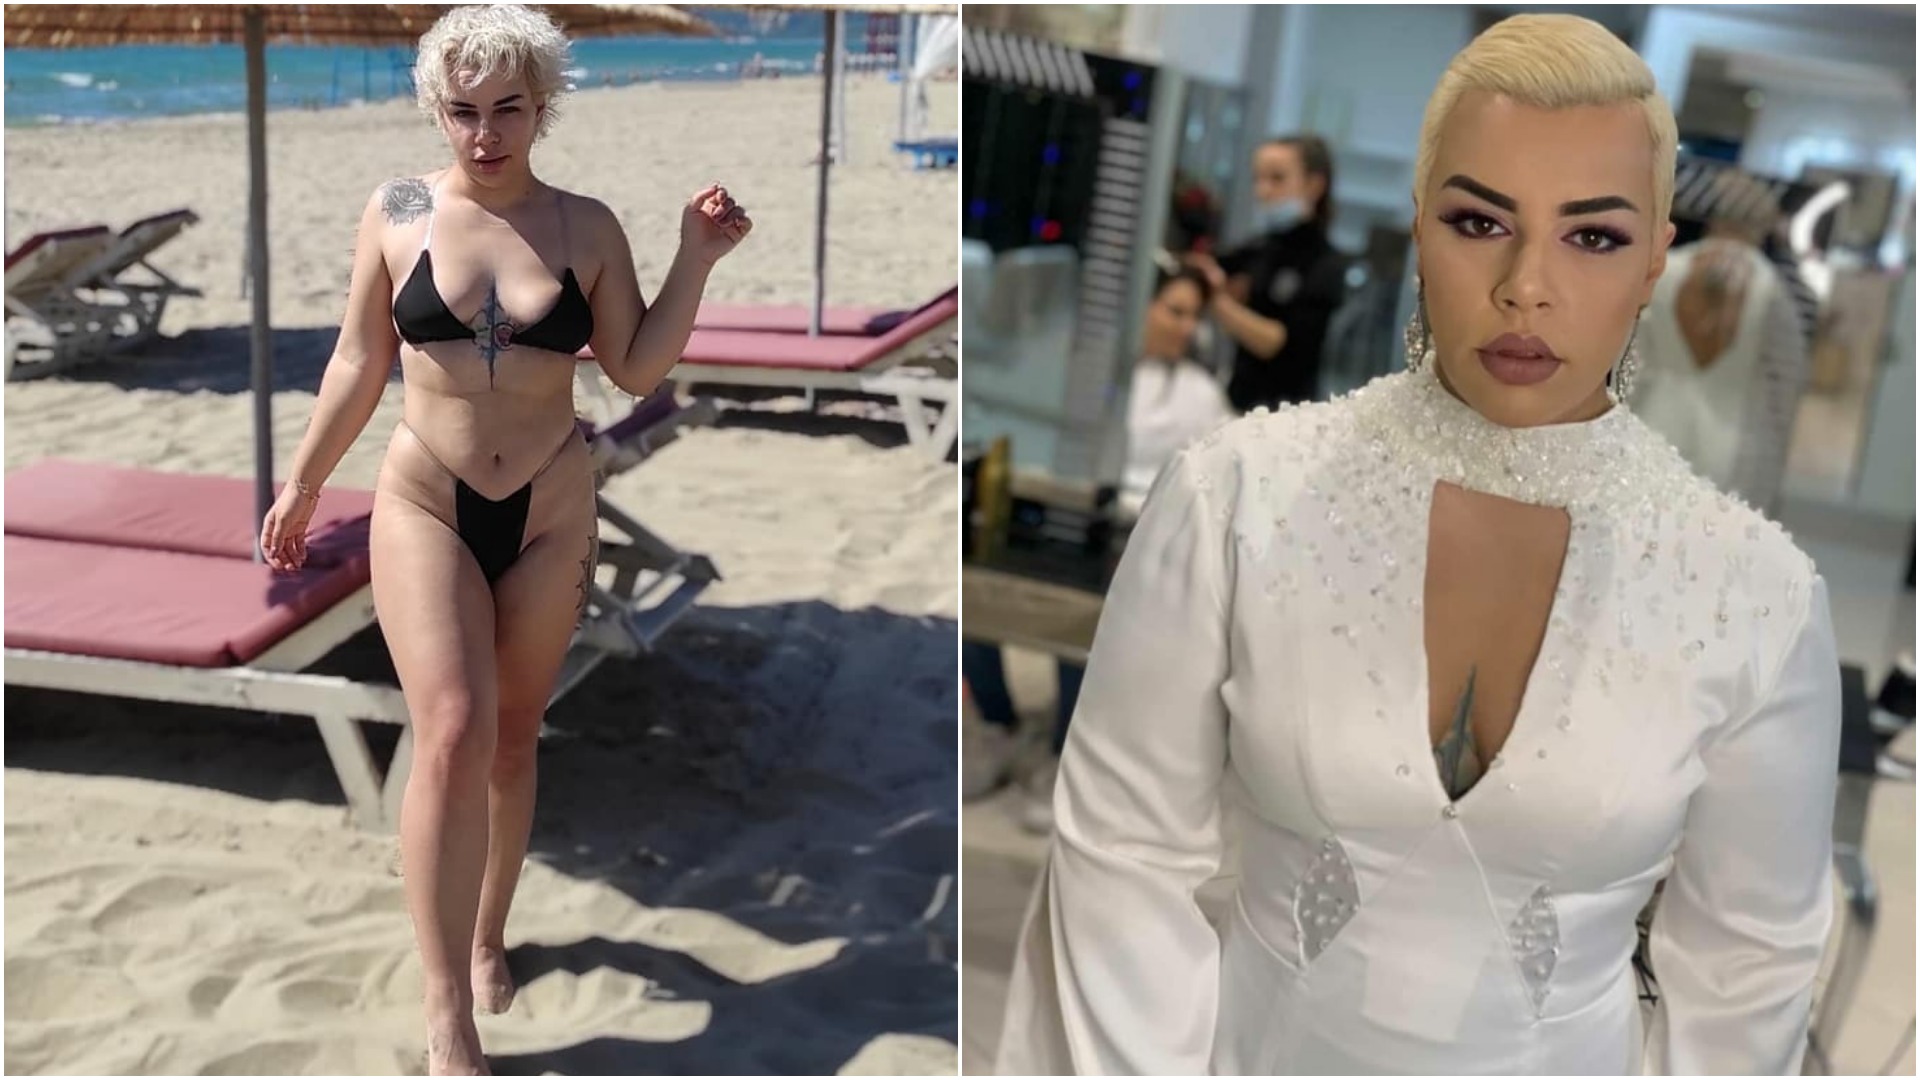 “Mjerë fëmijët”, pasi postoi foton me bikini, këngëtarja shqiptare i kthehet ndjekëses që e ofendoi